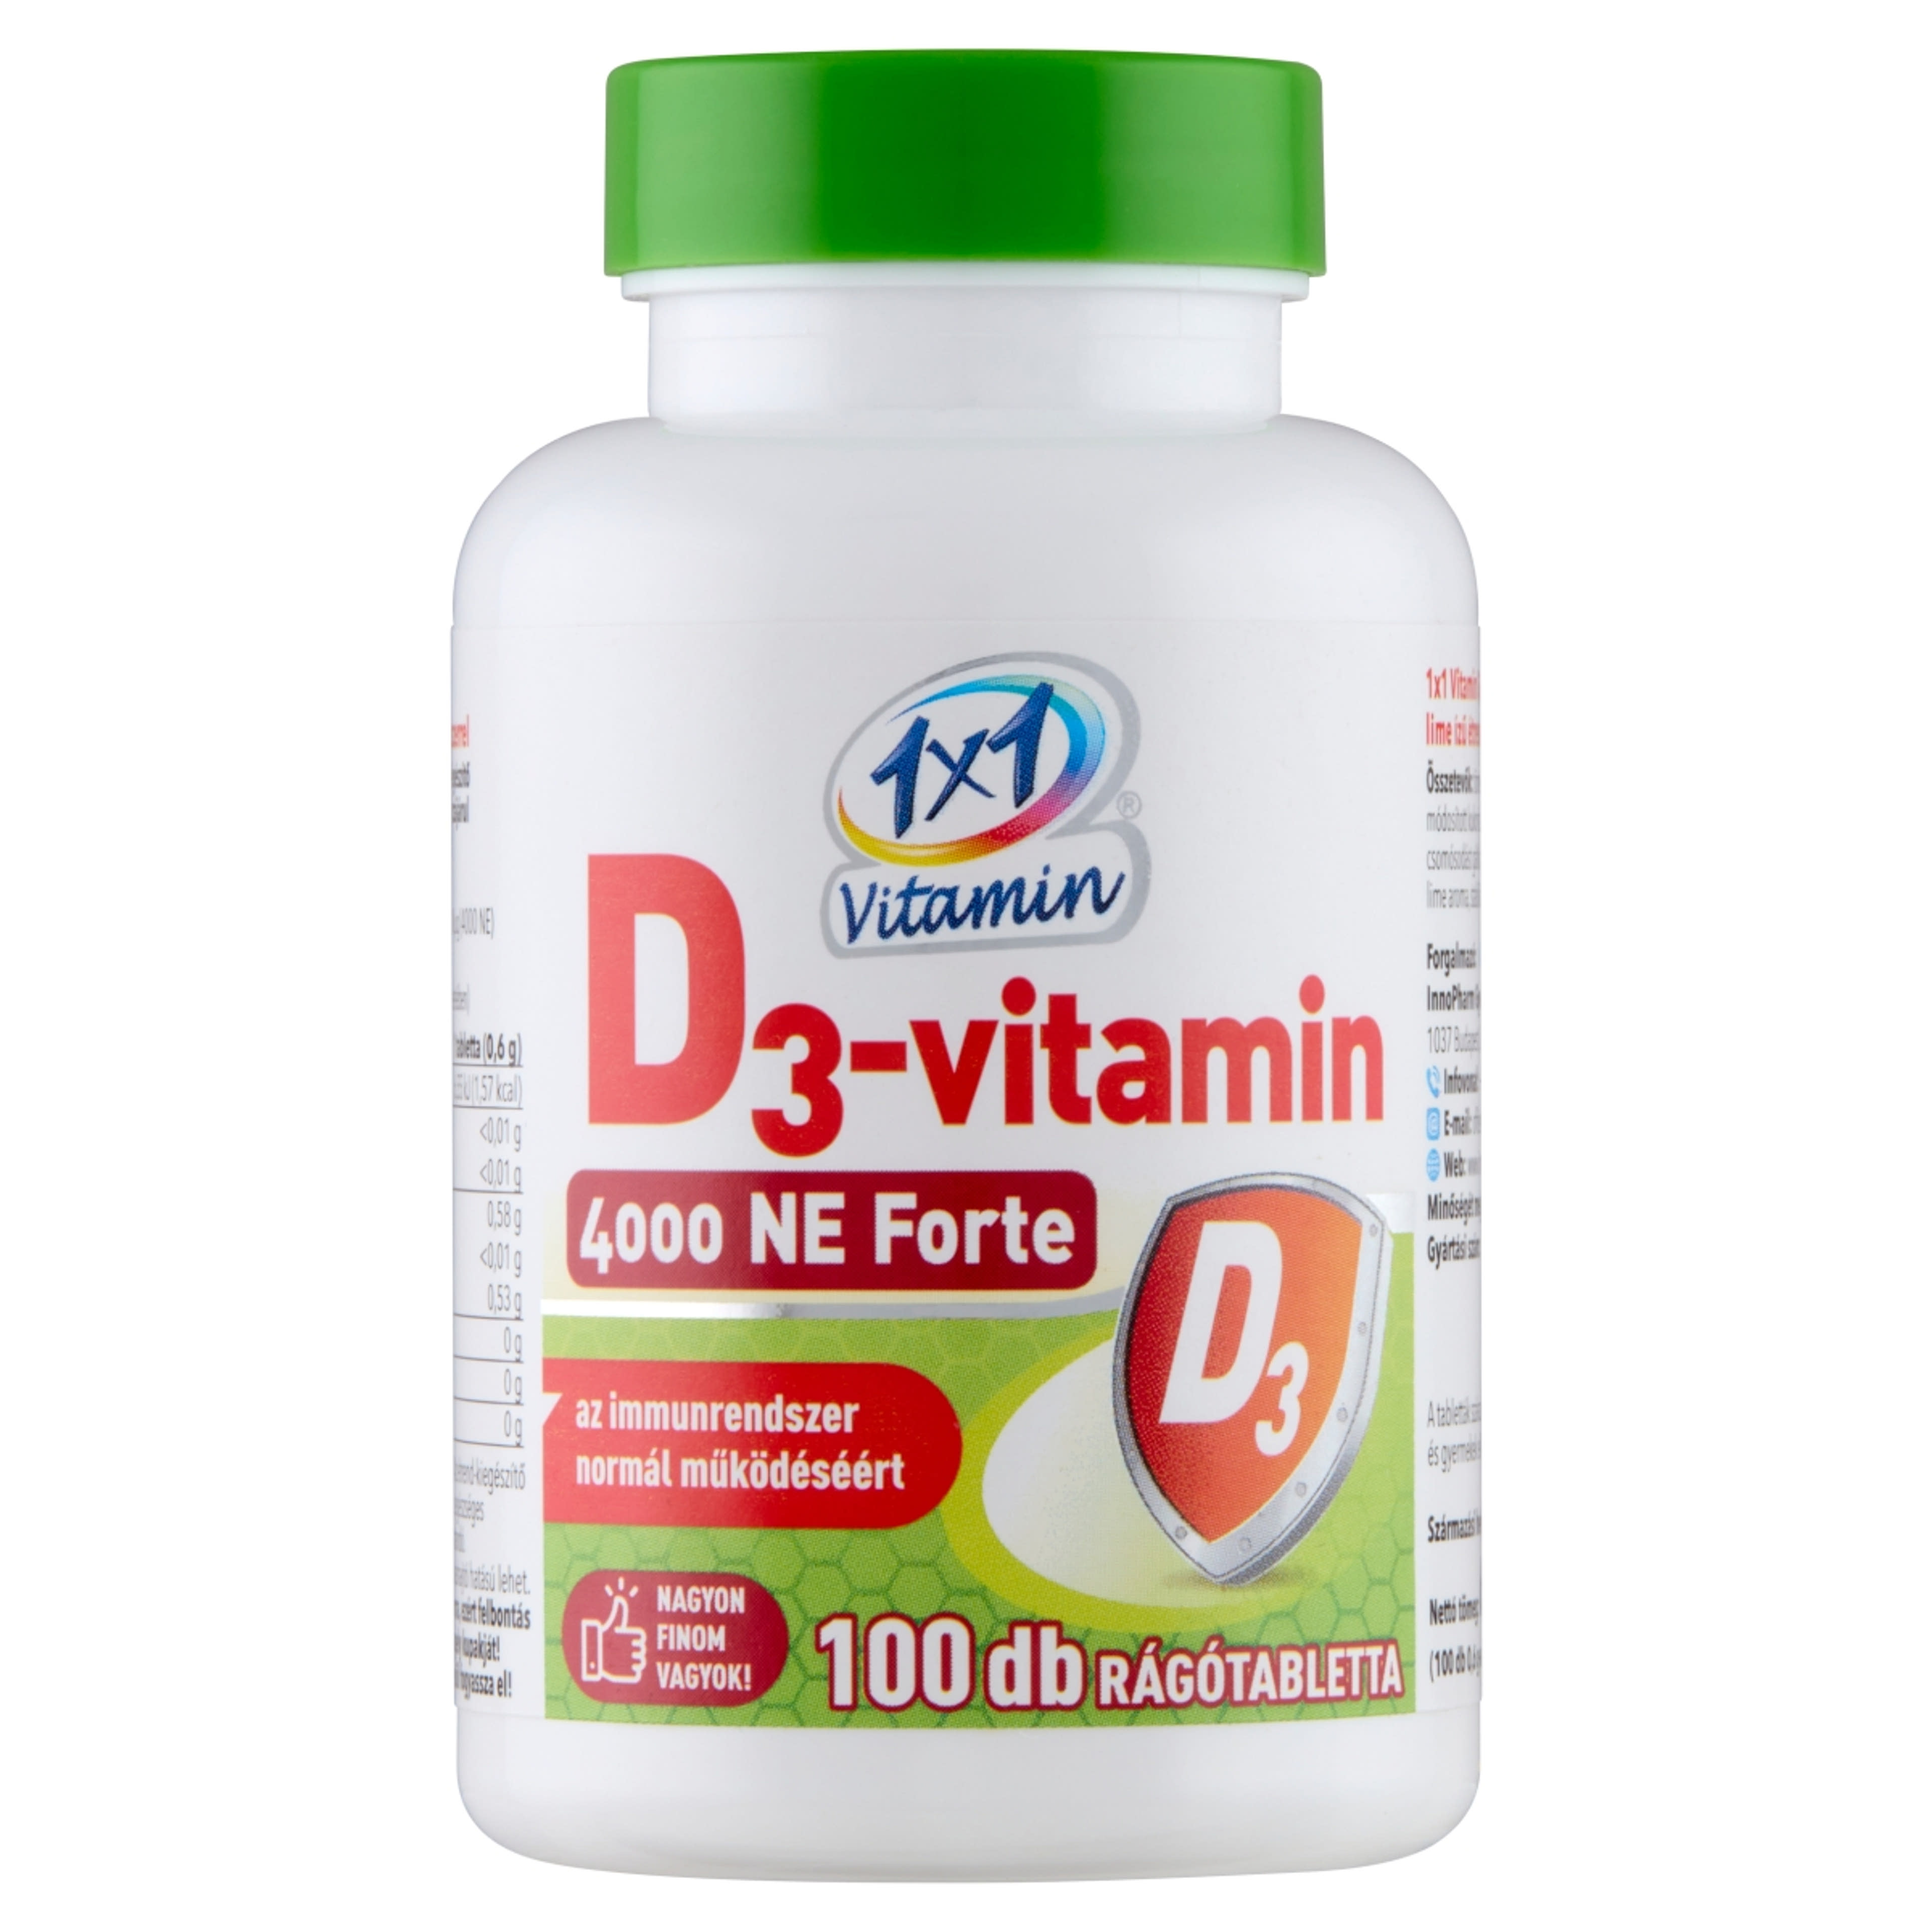 1x1 vitamin D3 4000 Ne forte rágótabletta - 100 db